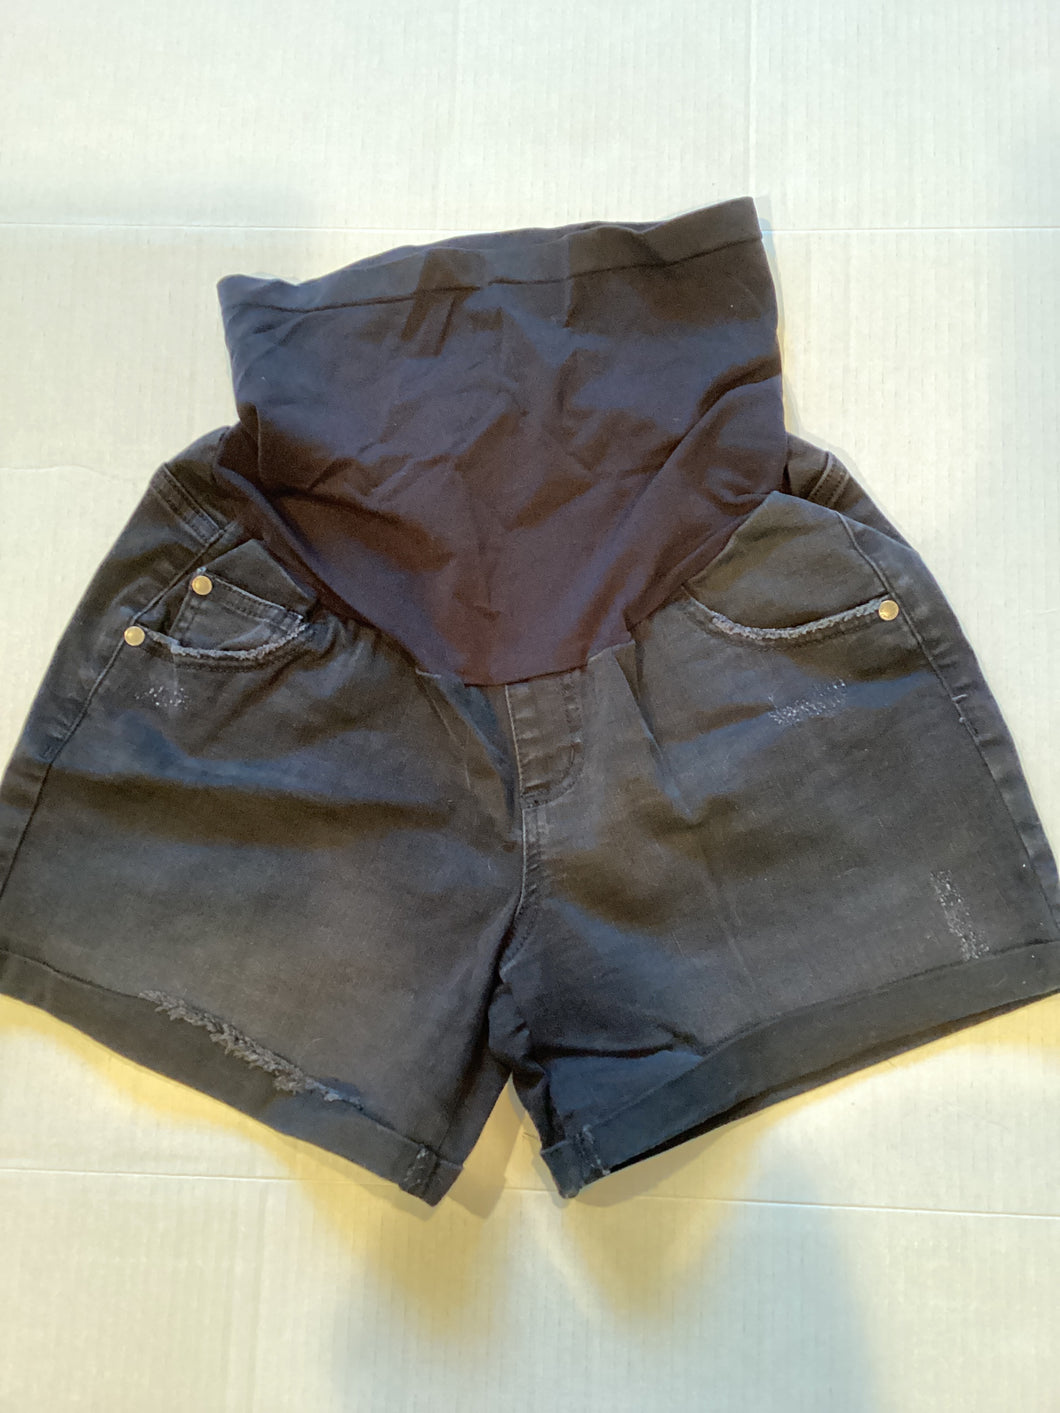 Indigo blue maternity size L black denim shorts Adult Large